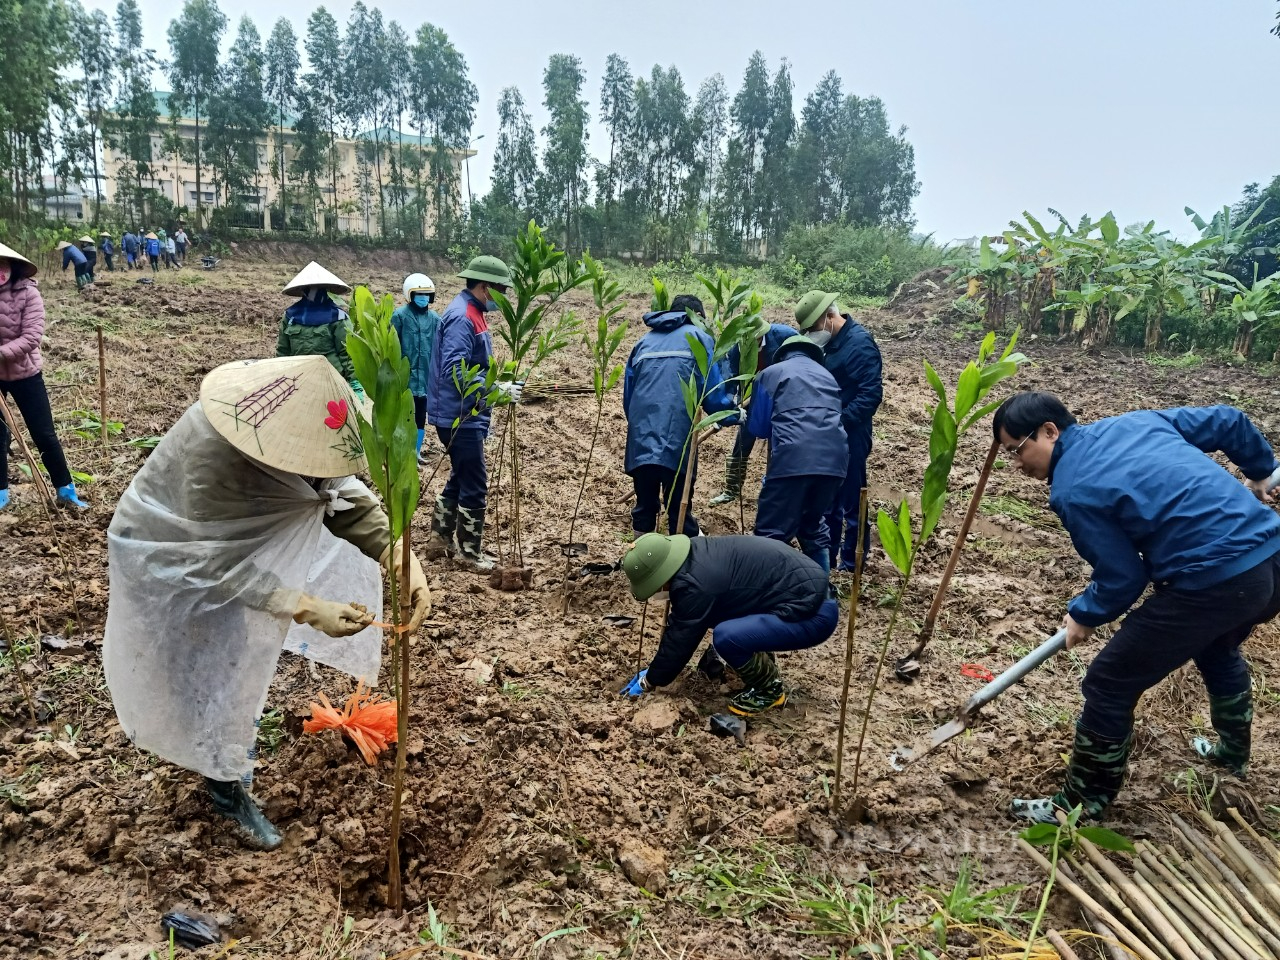 TP. Hải Dương: Chính quyền chung tay với người dân trồng cây phủ xanh đường làng nông thôn - Ảnh 1.